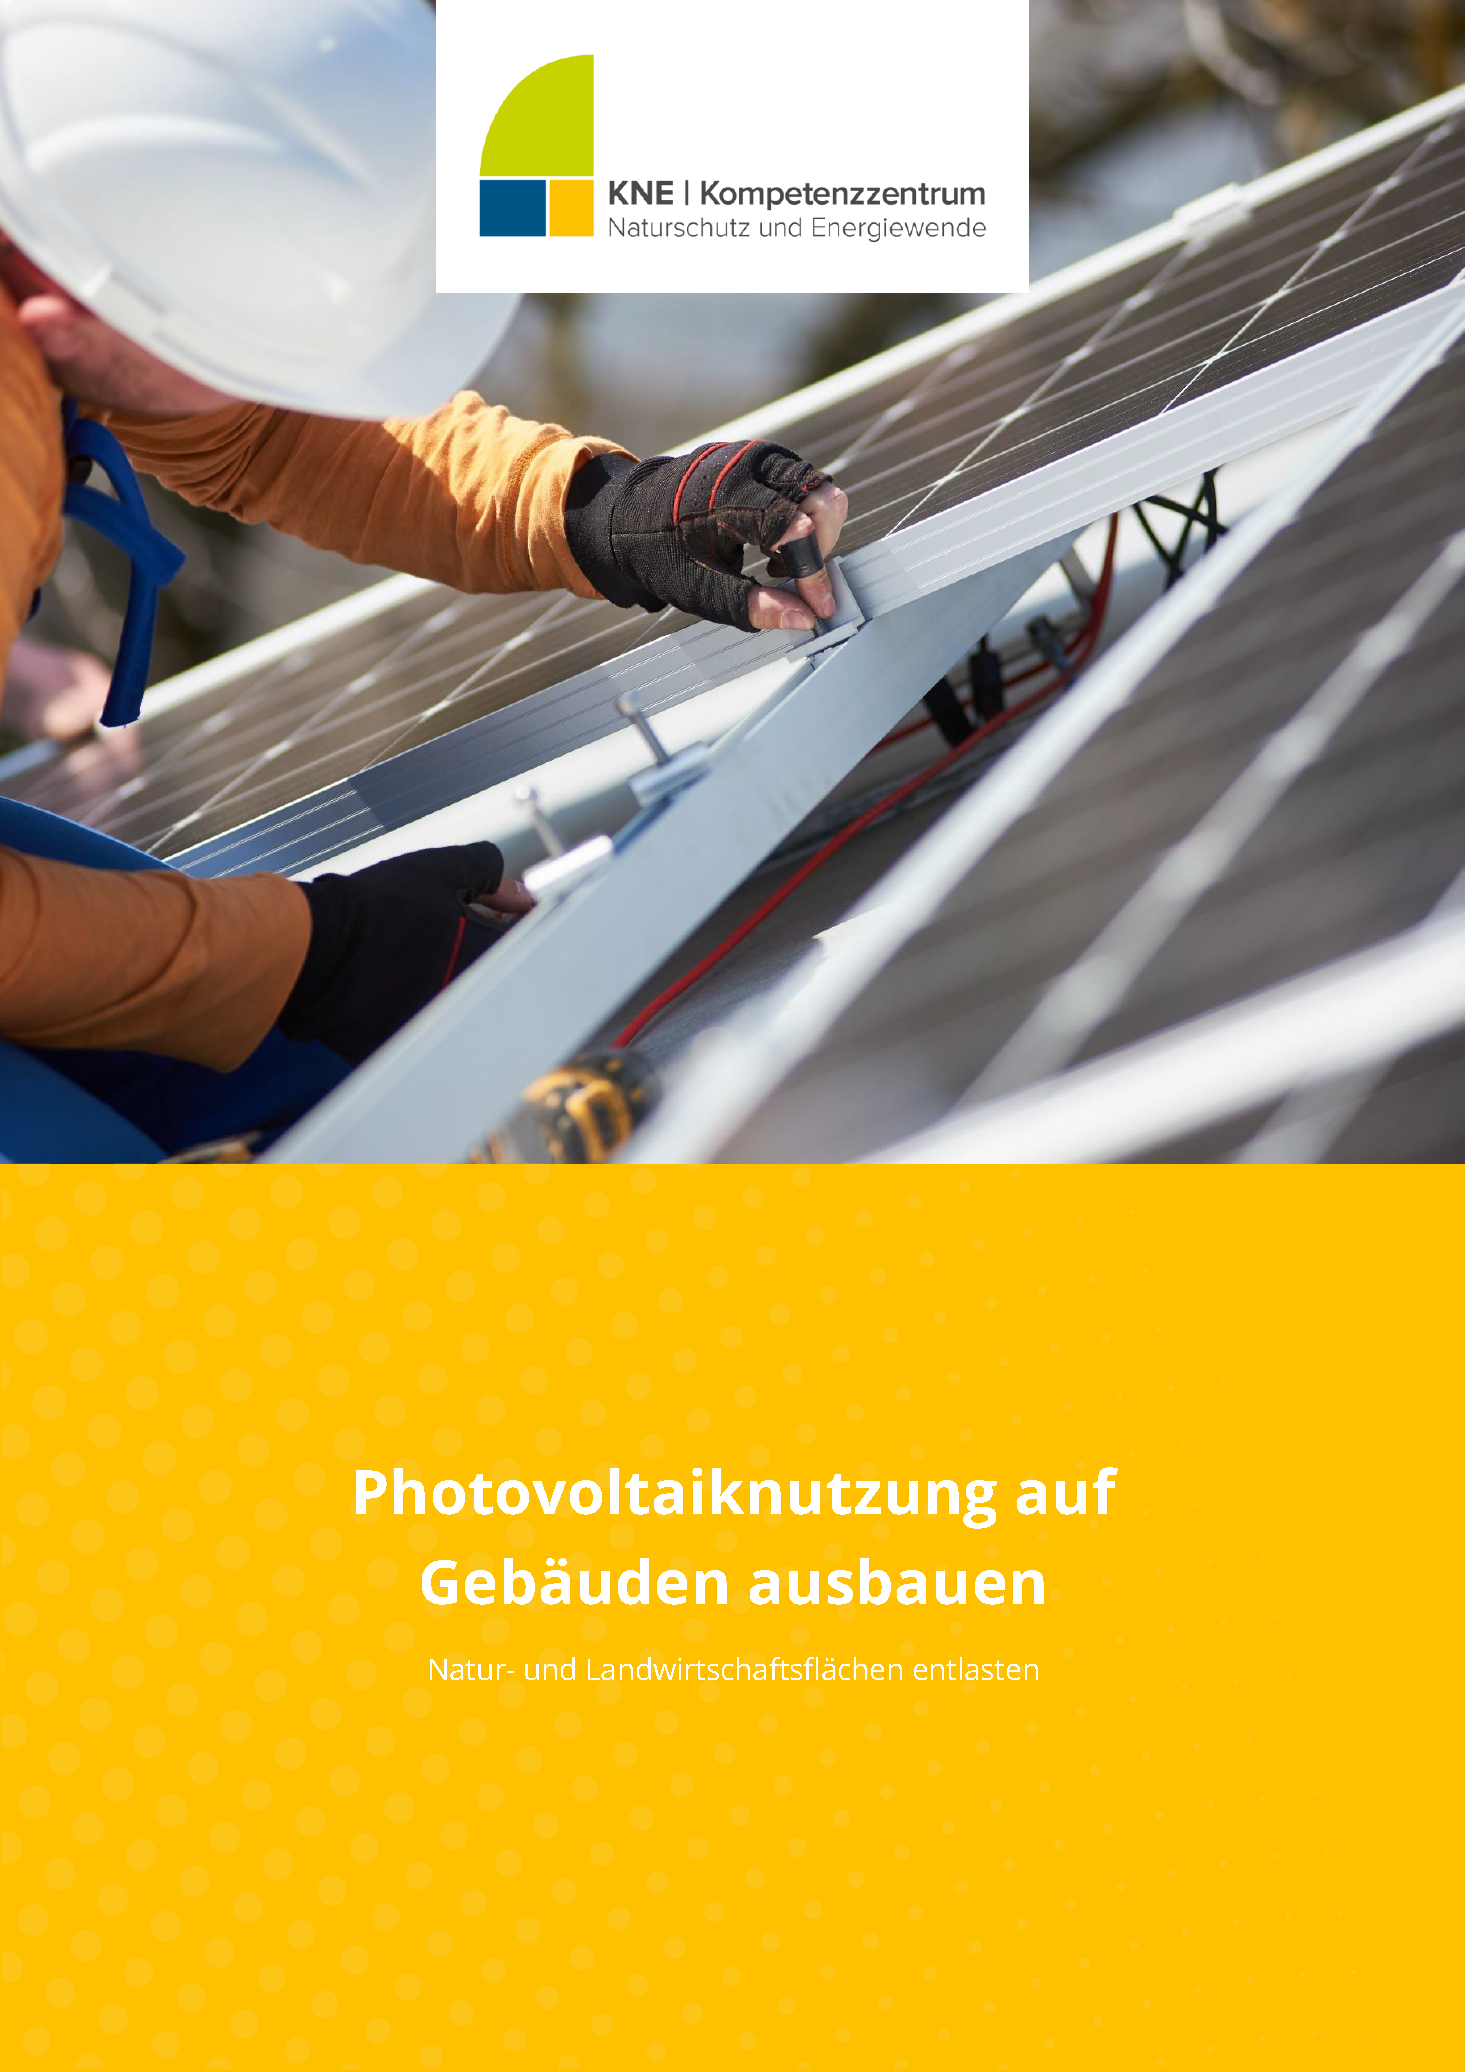 https://www.naturschutz-energiewende.de/fachwissen/veroeffentlichungen/photovoltaiknutzung-auf-gebaeuden-ausbauen-natur-und-landwirtschaftsflaechen-entlasten/